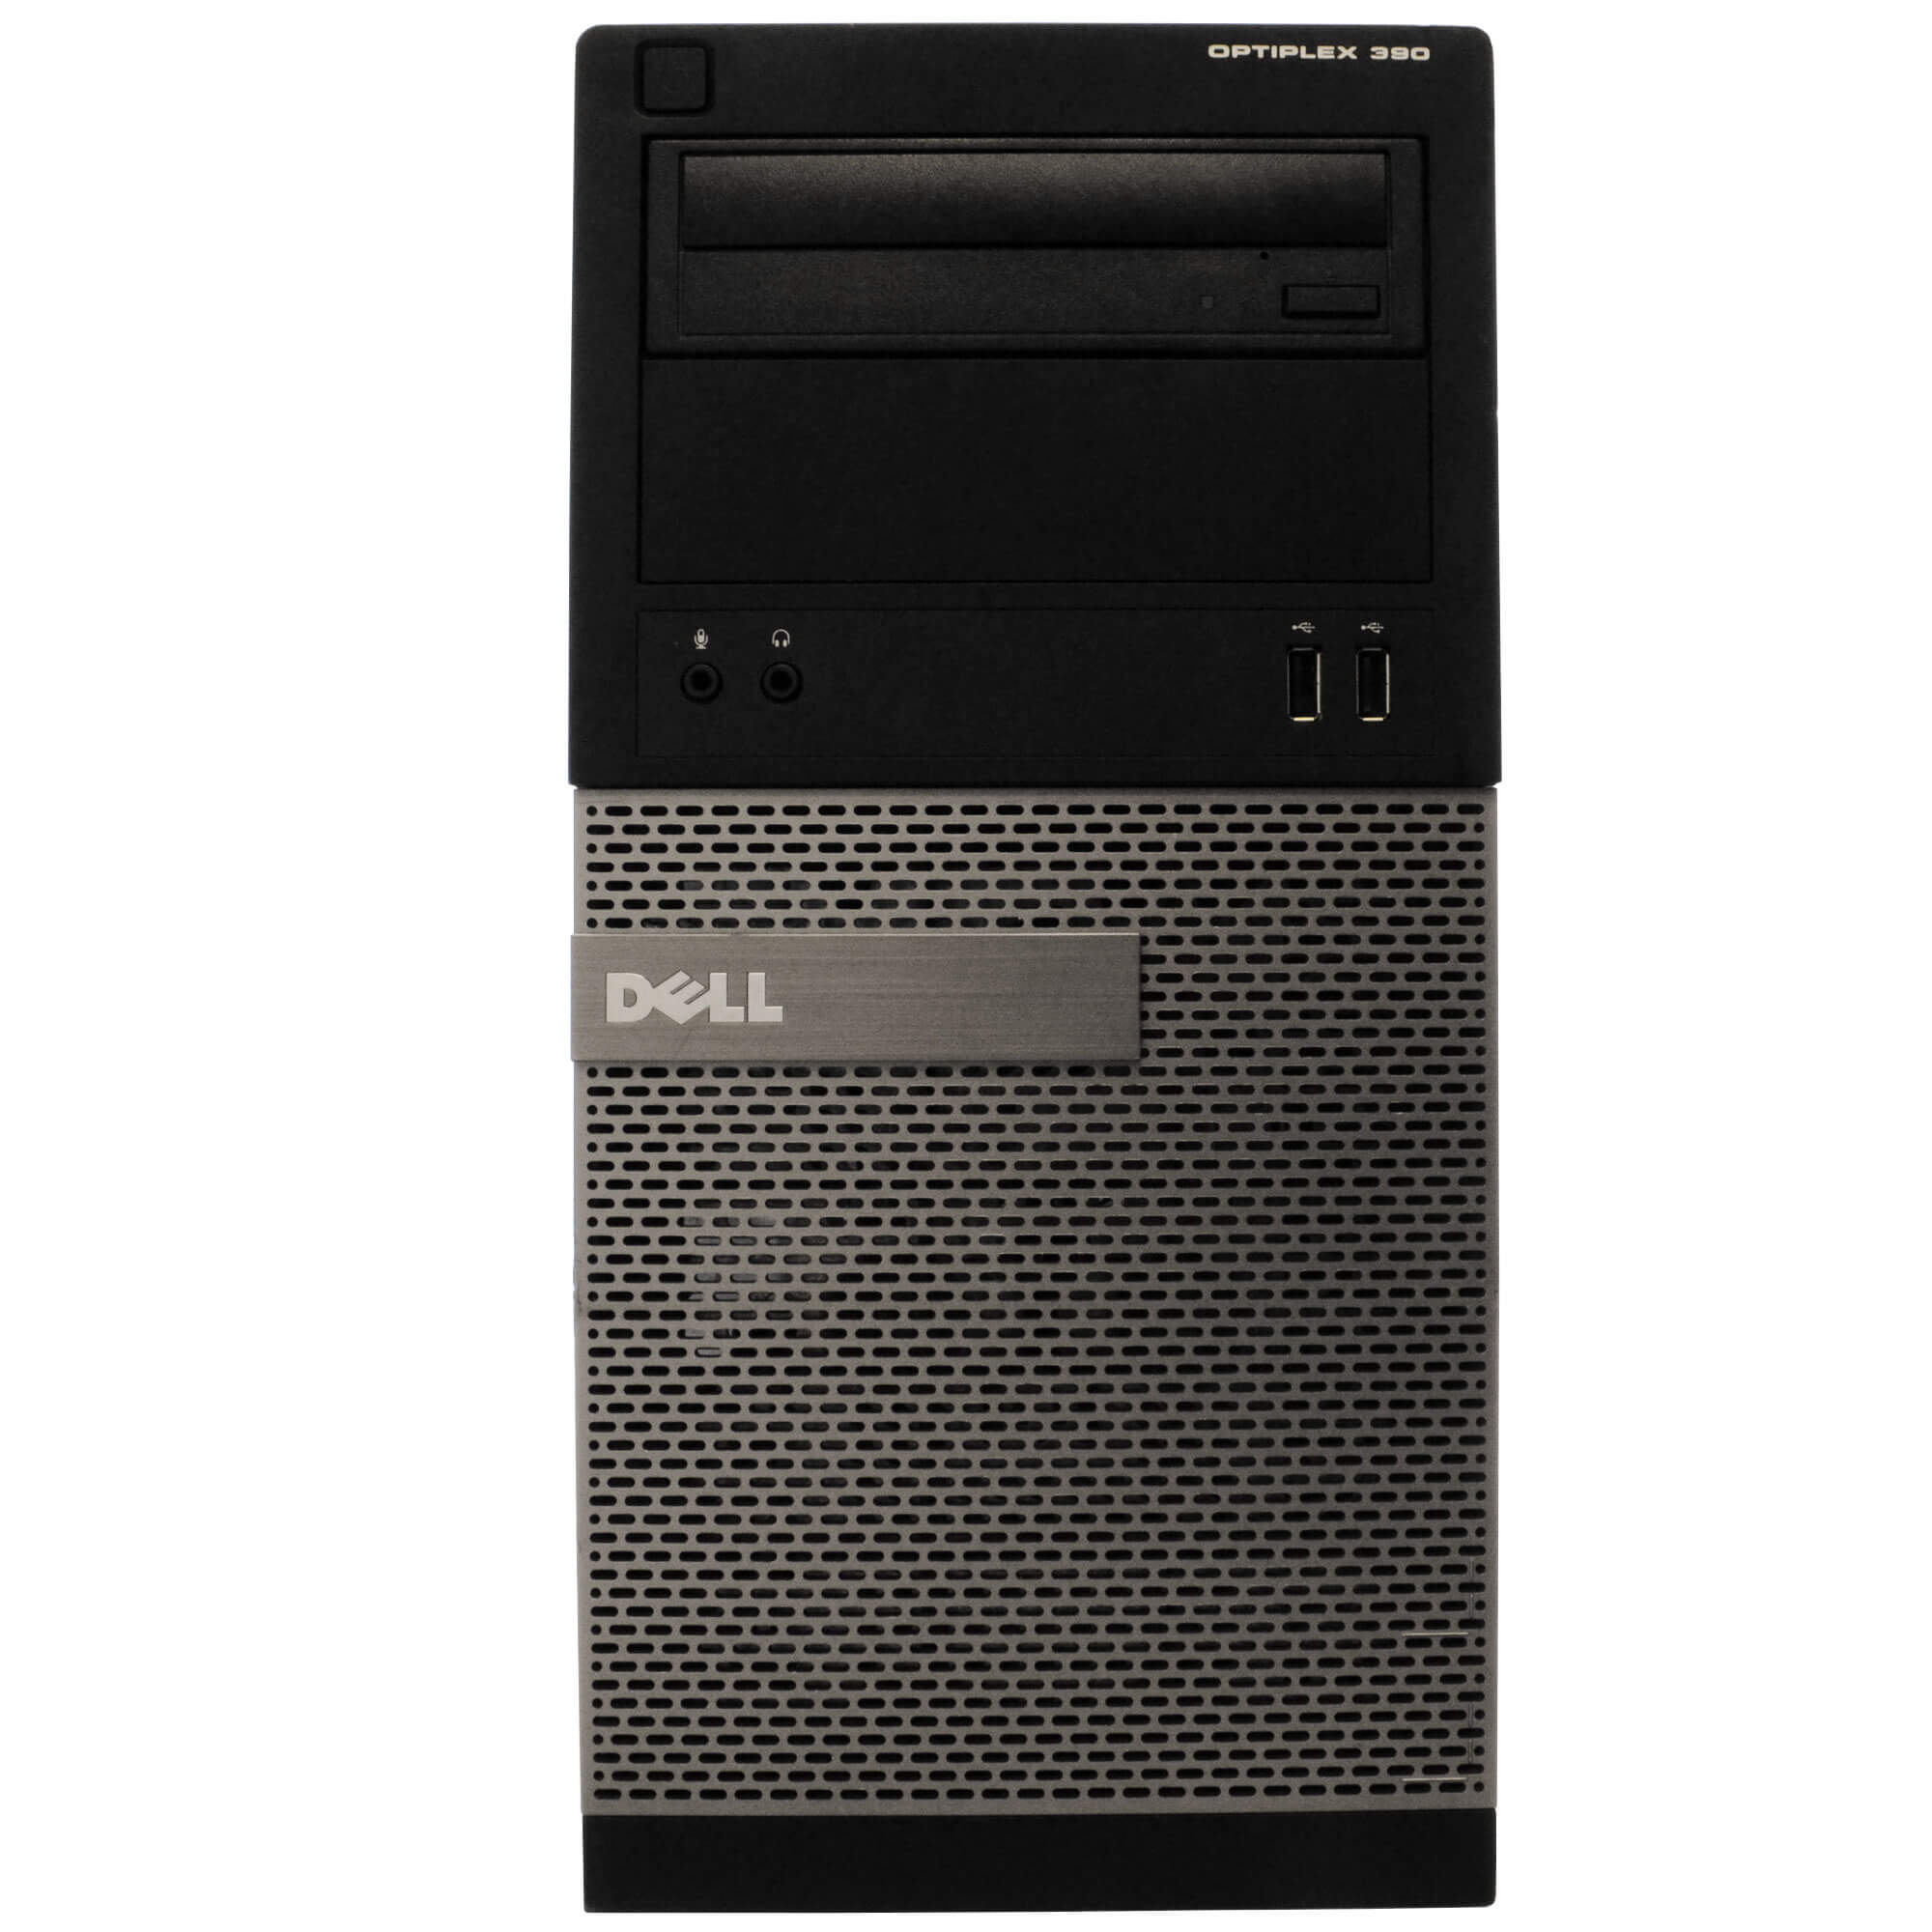 Dell 390 Tower PC, 3.2GHz Intel i5 Quad Core Gen 2, 4GB RAM, 250GB SATA HD, Windows 10 Home 64 bit, 22" Screen (Renewed)